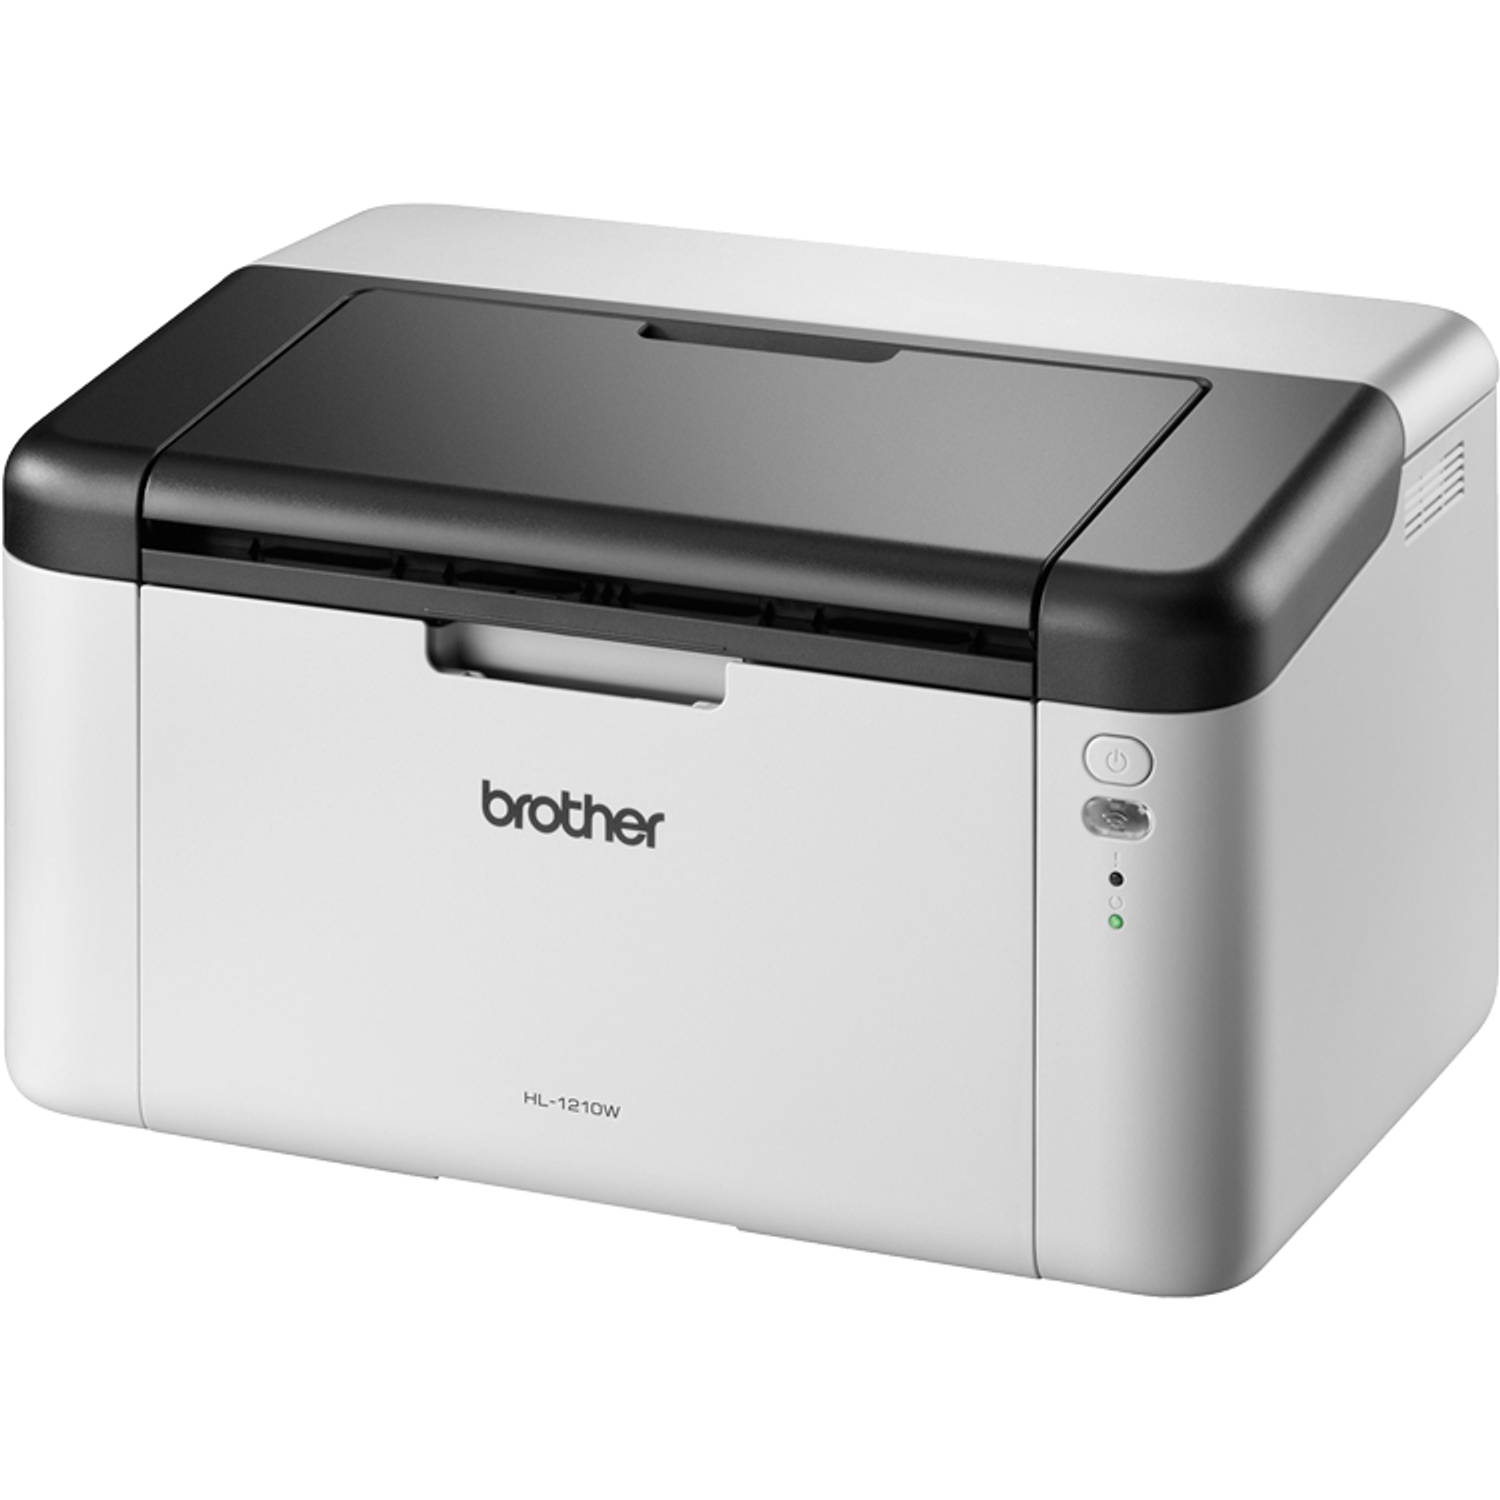 Laserprinter Brother HL-1210W